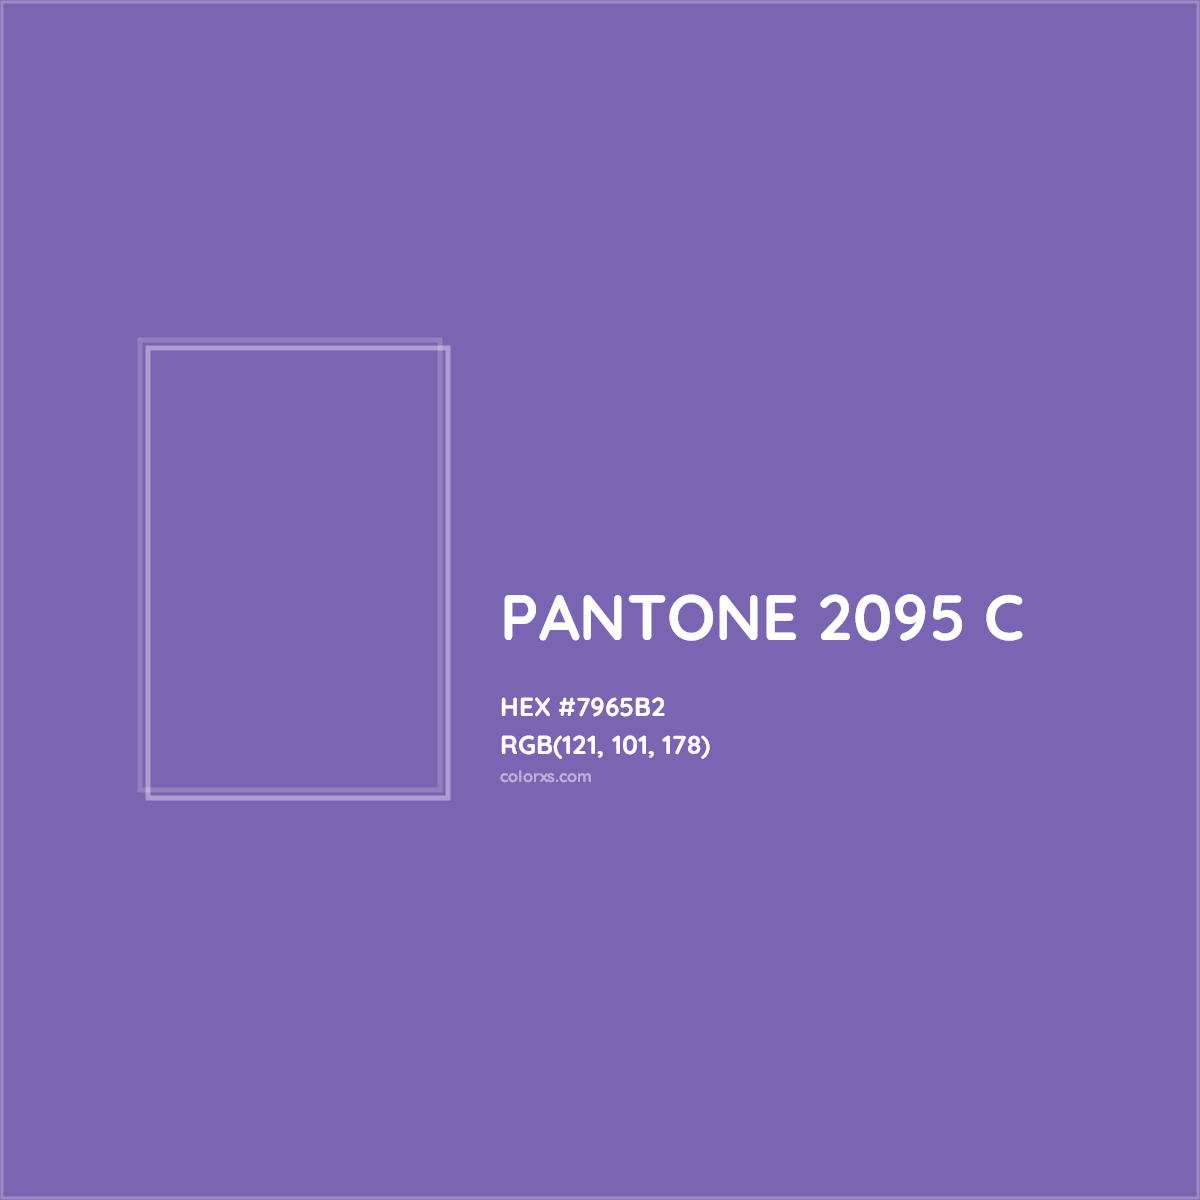 HEX #7965B2 PANTONE 2095 C CMS Pantone PMS - Color Code